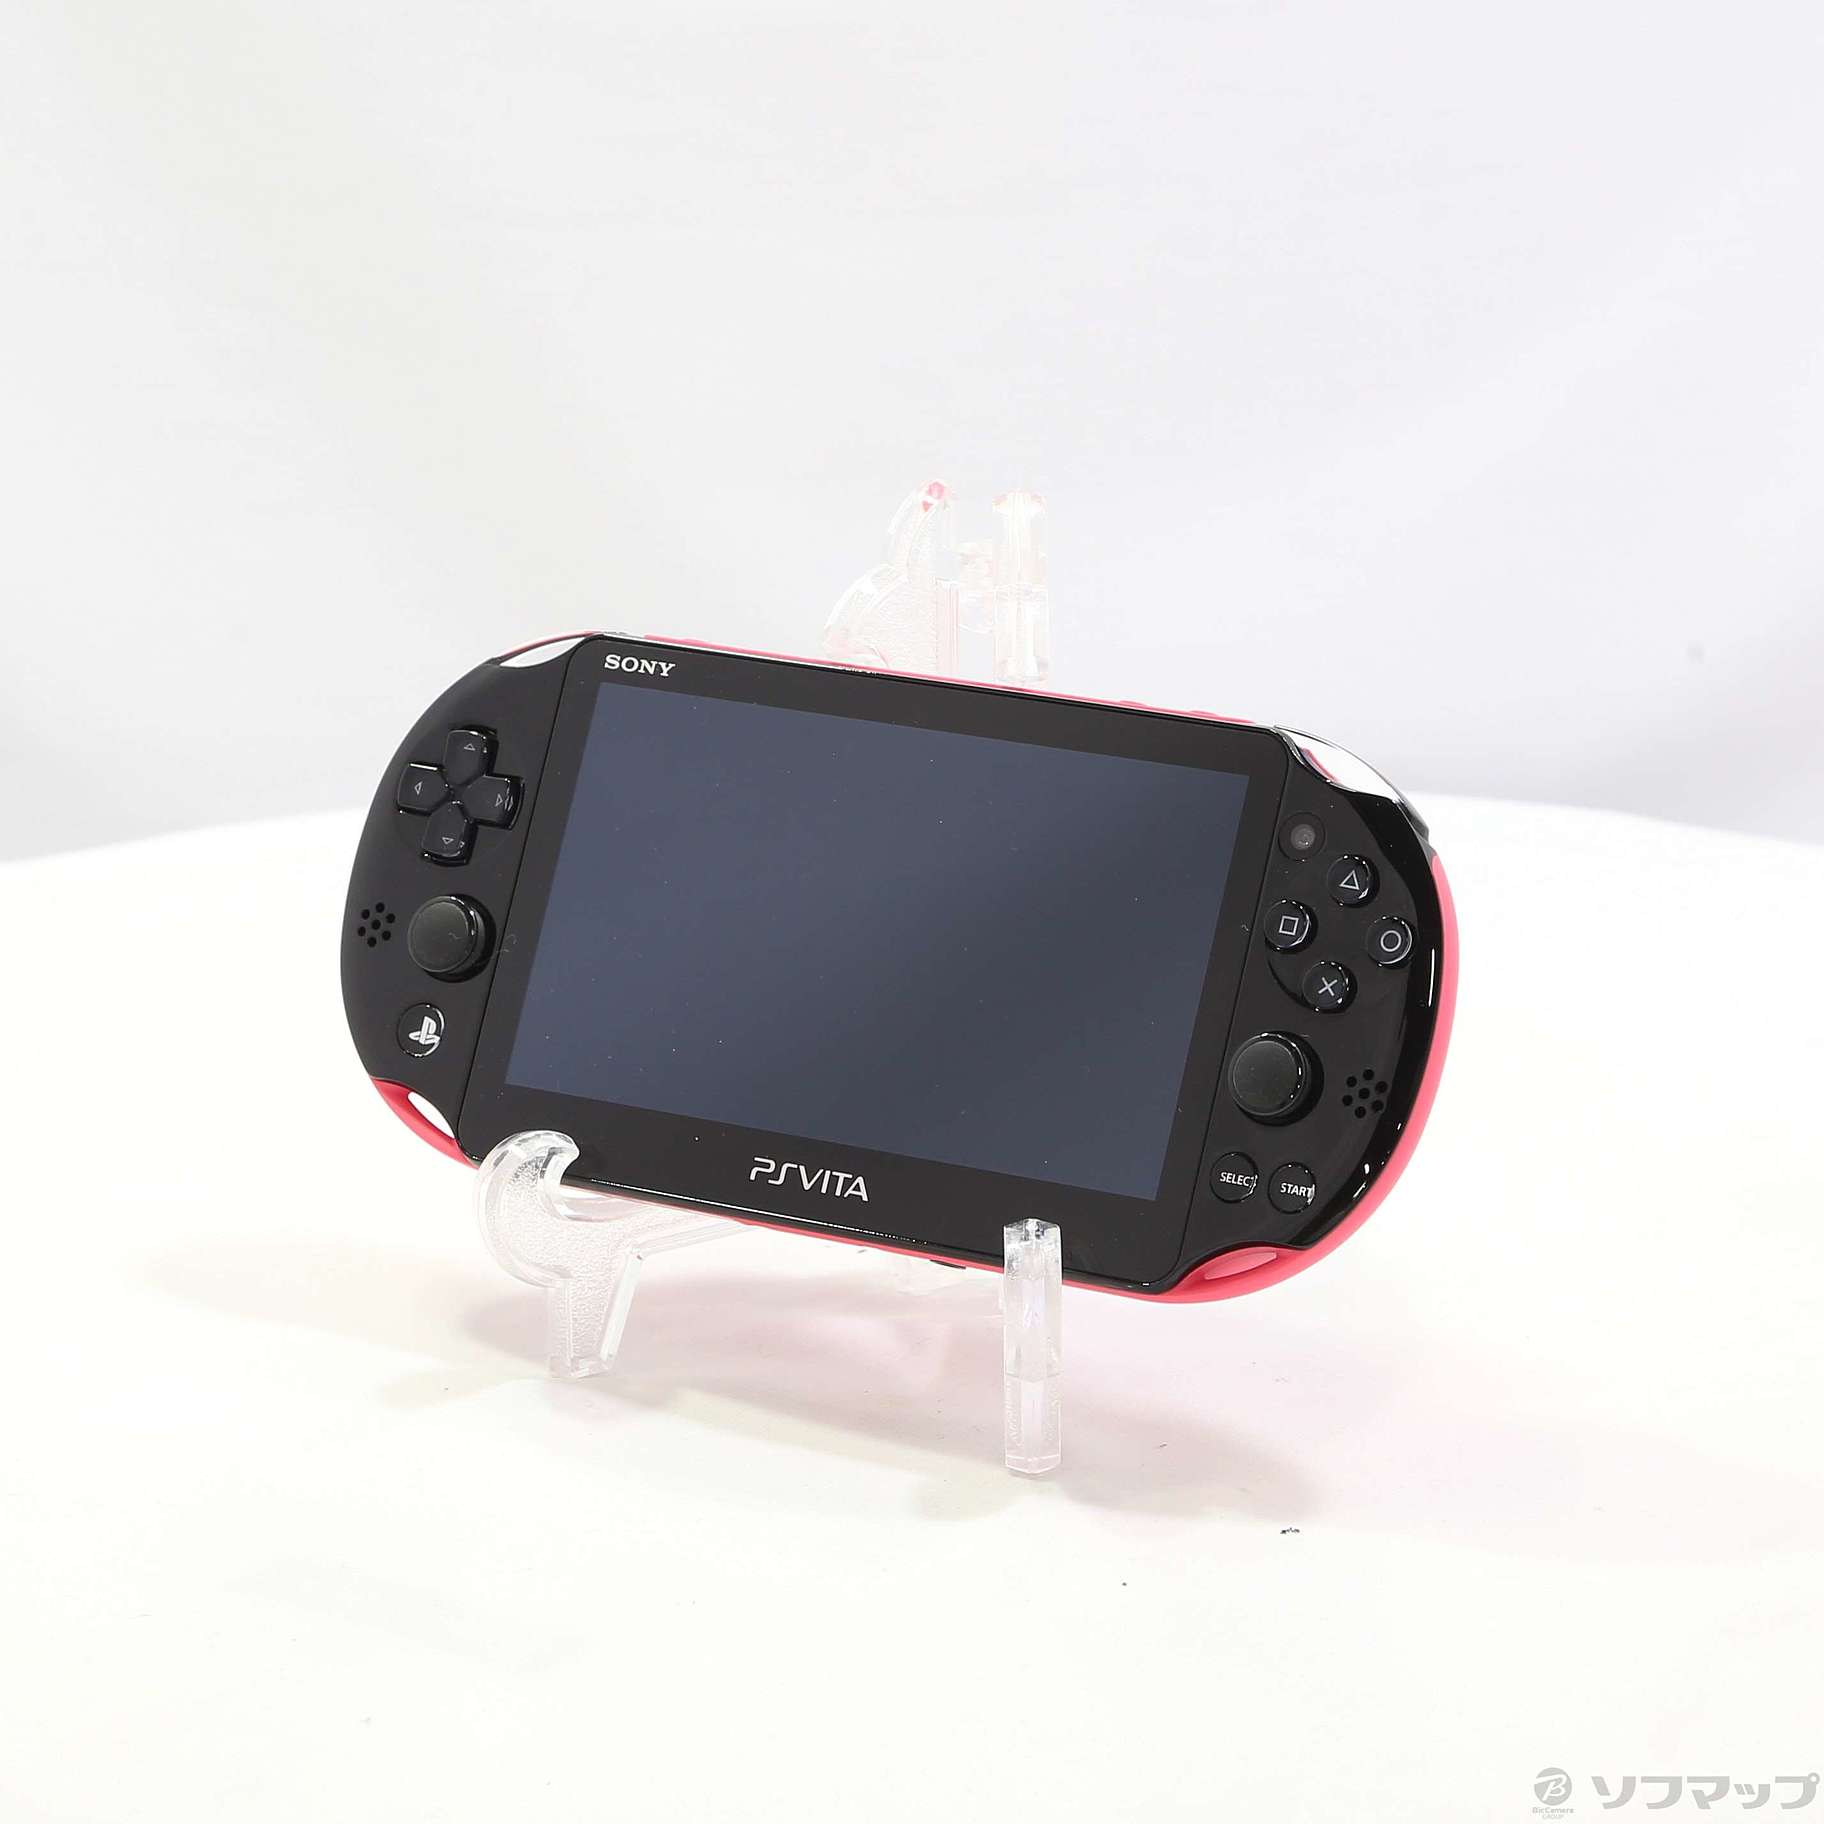 中古】PlayStation Vita Wi-Fiモデル ピンクブラック PCH-2000ZA 